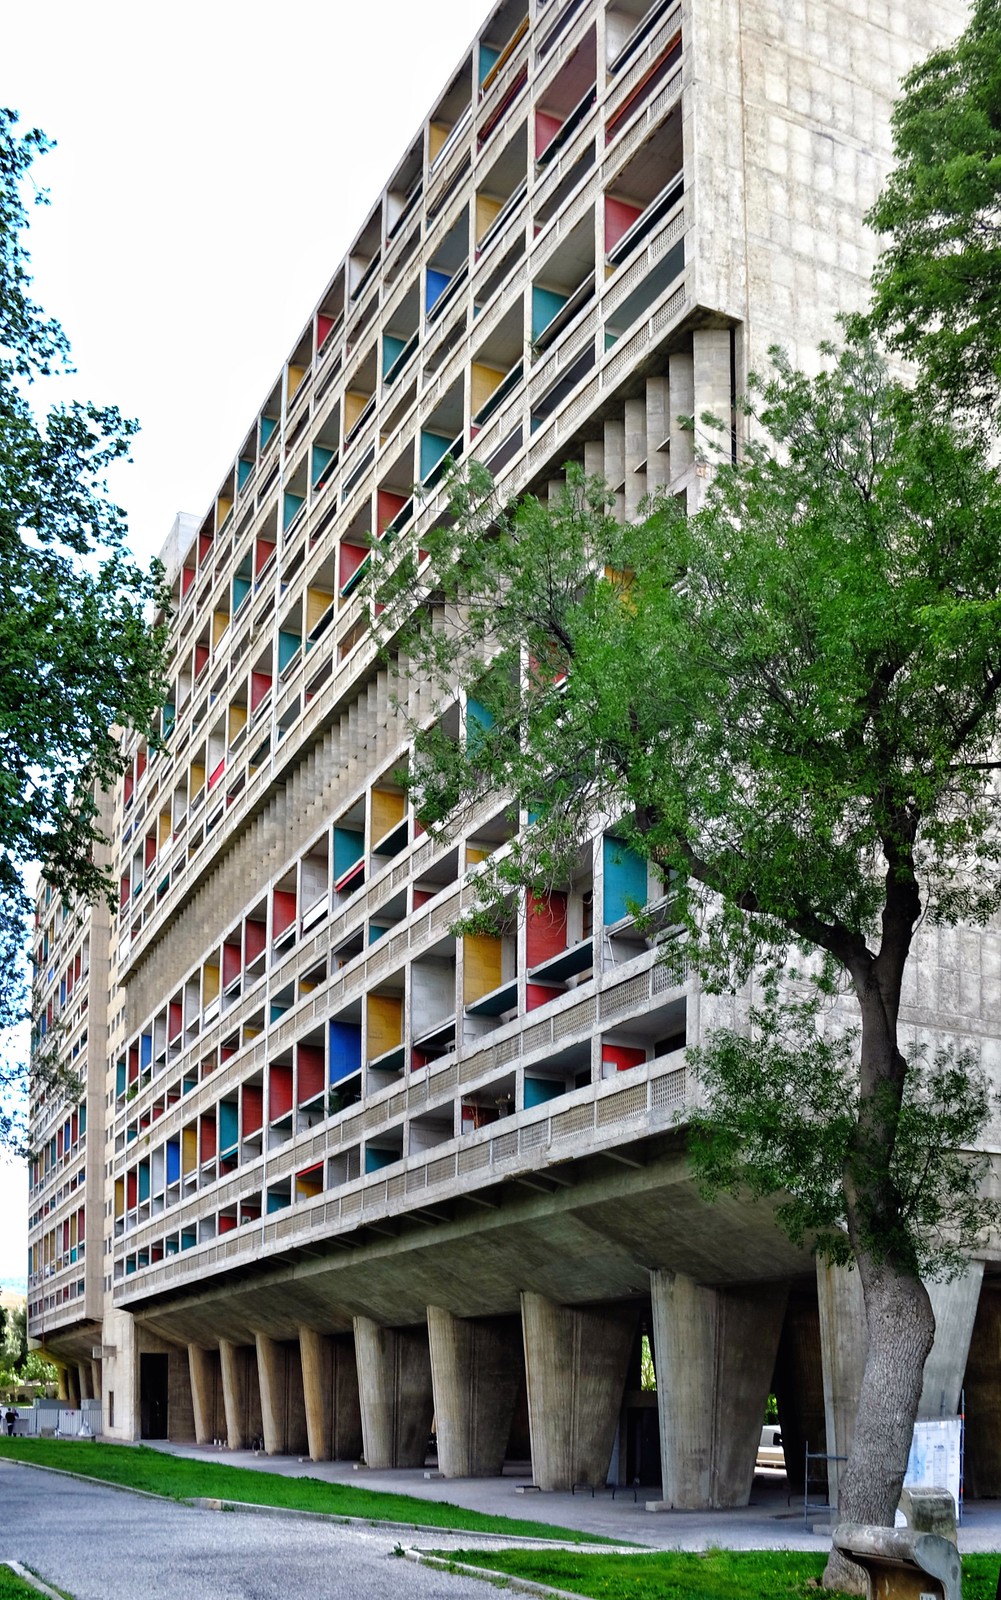 Tòa chung cư Unité d’Habitation (Pháp) theo trường phái bạo lực đã được UNESCo đưa vào danh sách Di sản văn hóa thế giới của UNESCO.